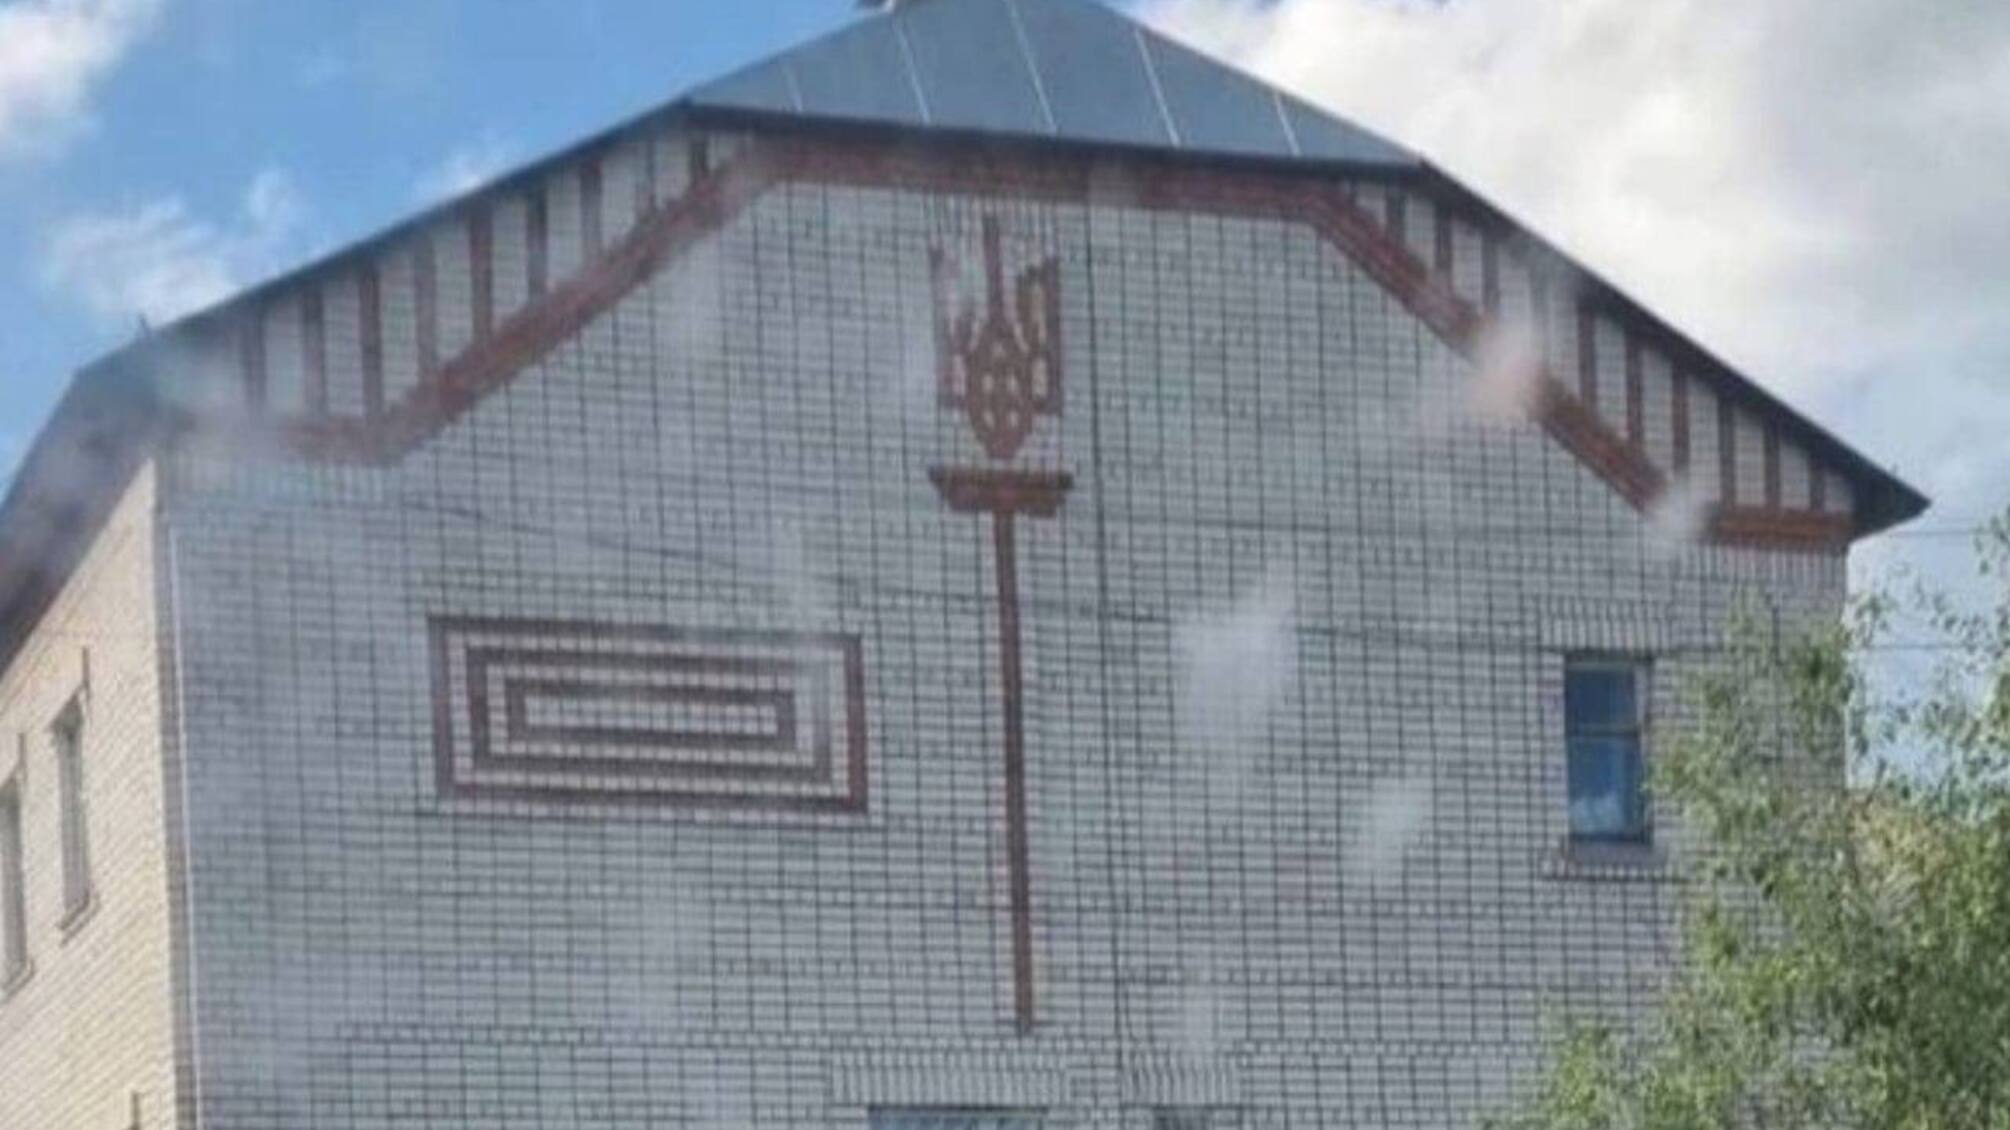 Назвали 'предметом искусства' и оставить: в россии на здании военкомата не смогли построить украинский герб (фото)